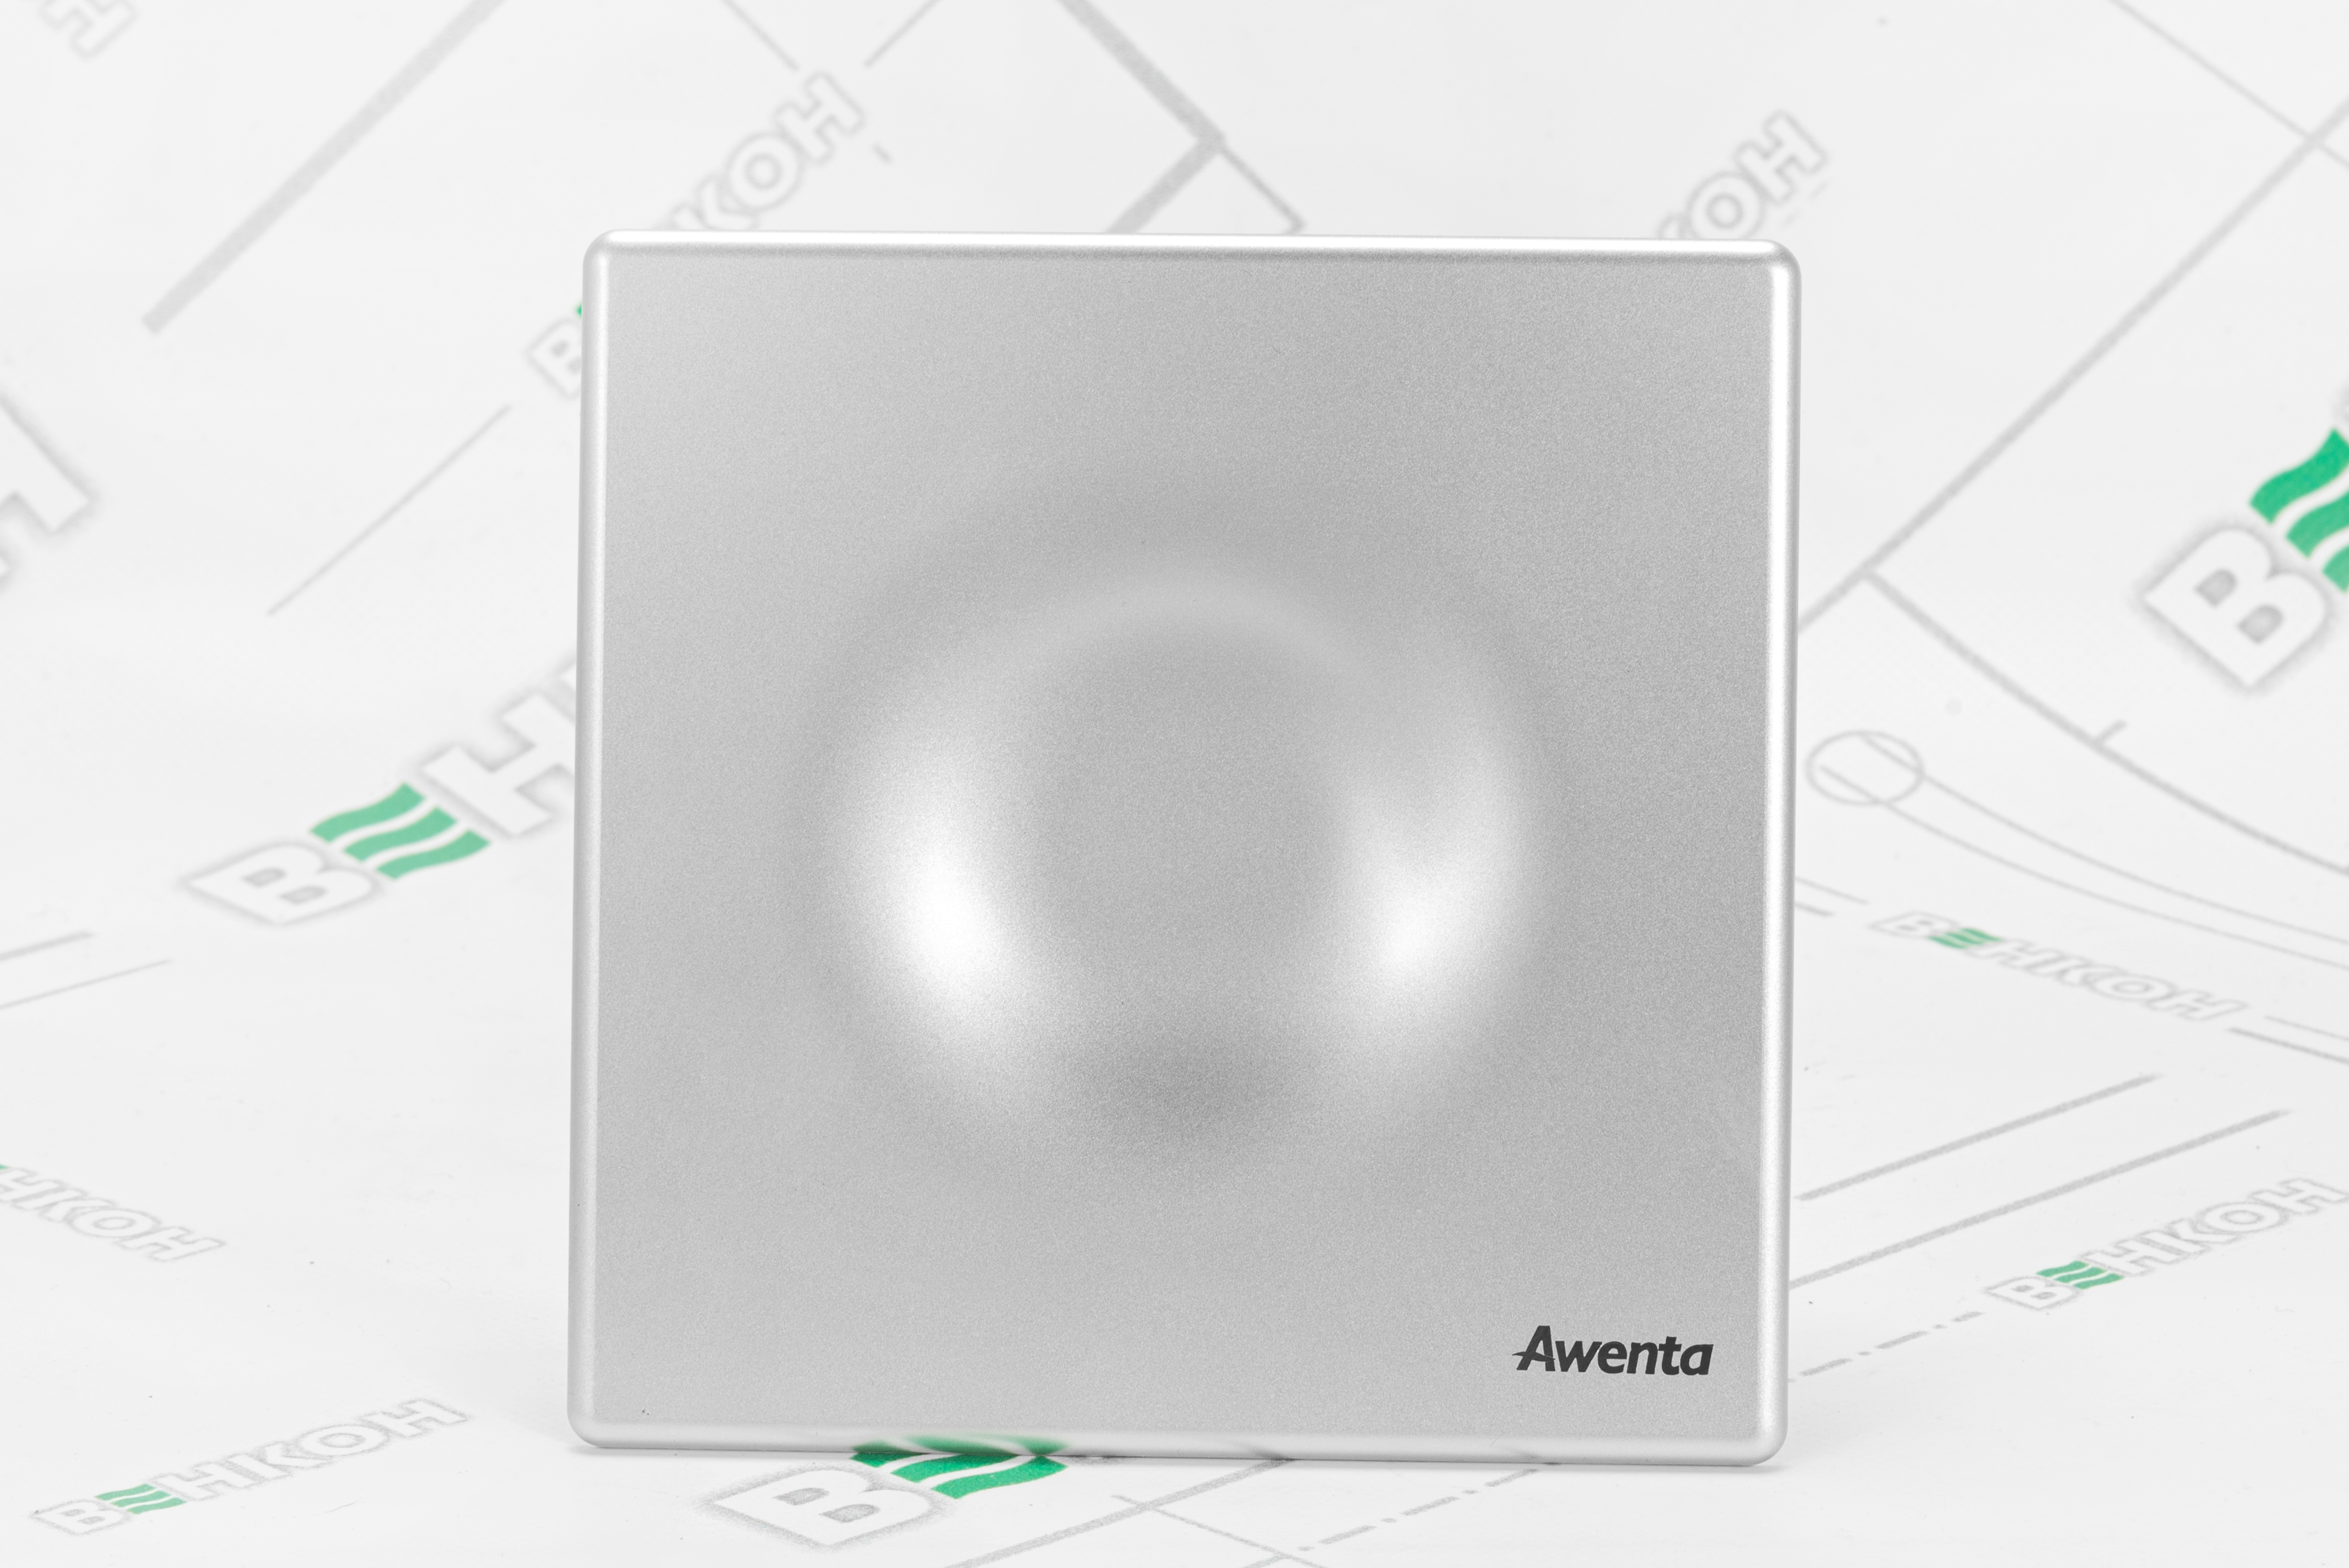 продаємо Awenta System+ Silent KWS100T-POS100 в Україні - фото 4